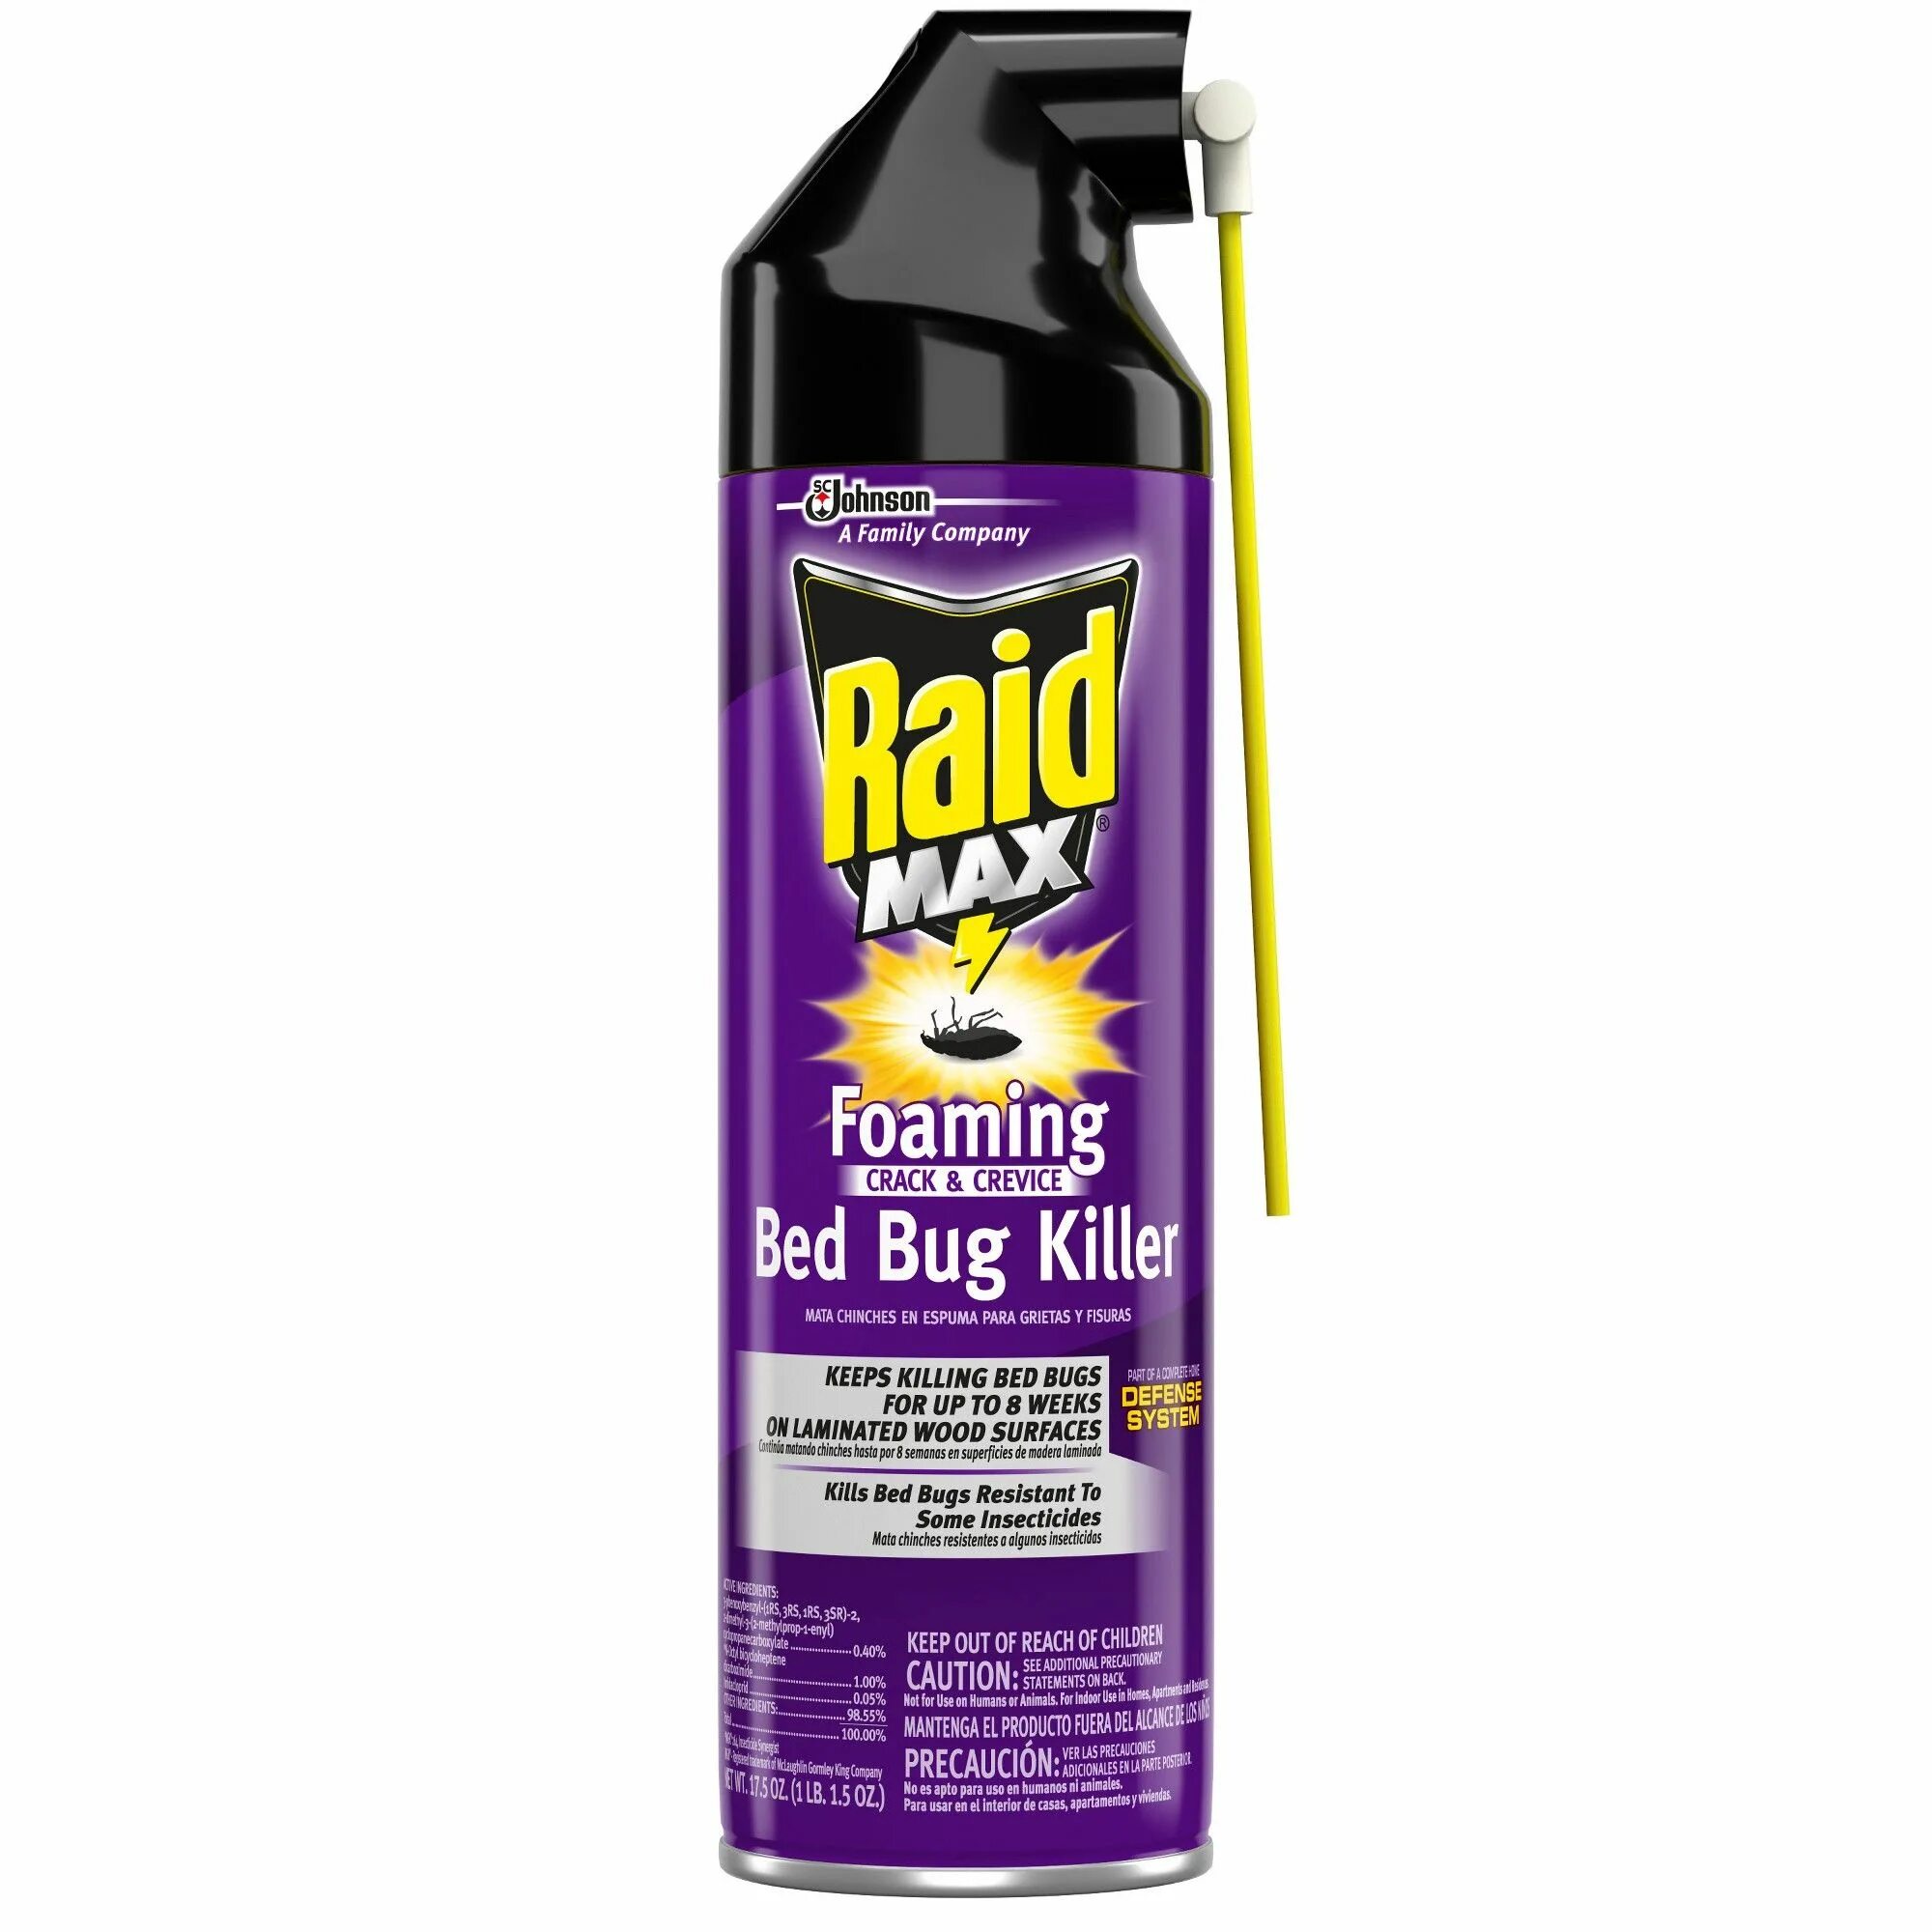 Рейд сторе купить. Спрей Райд Мах. Рейд от блох в квартире. Bug Killer Spray. SC Johnson Raid Max Bug Barrier.